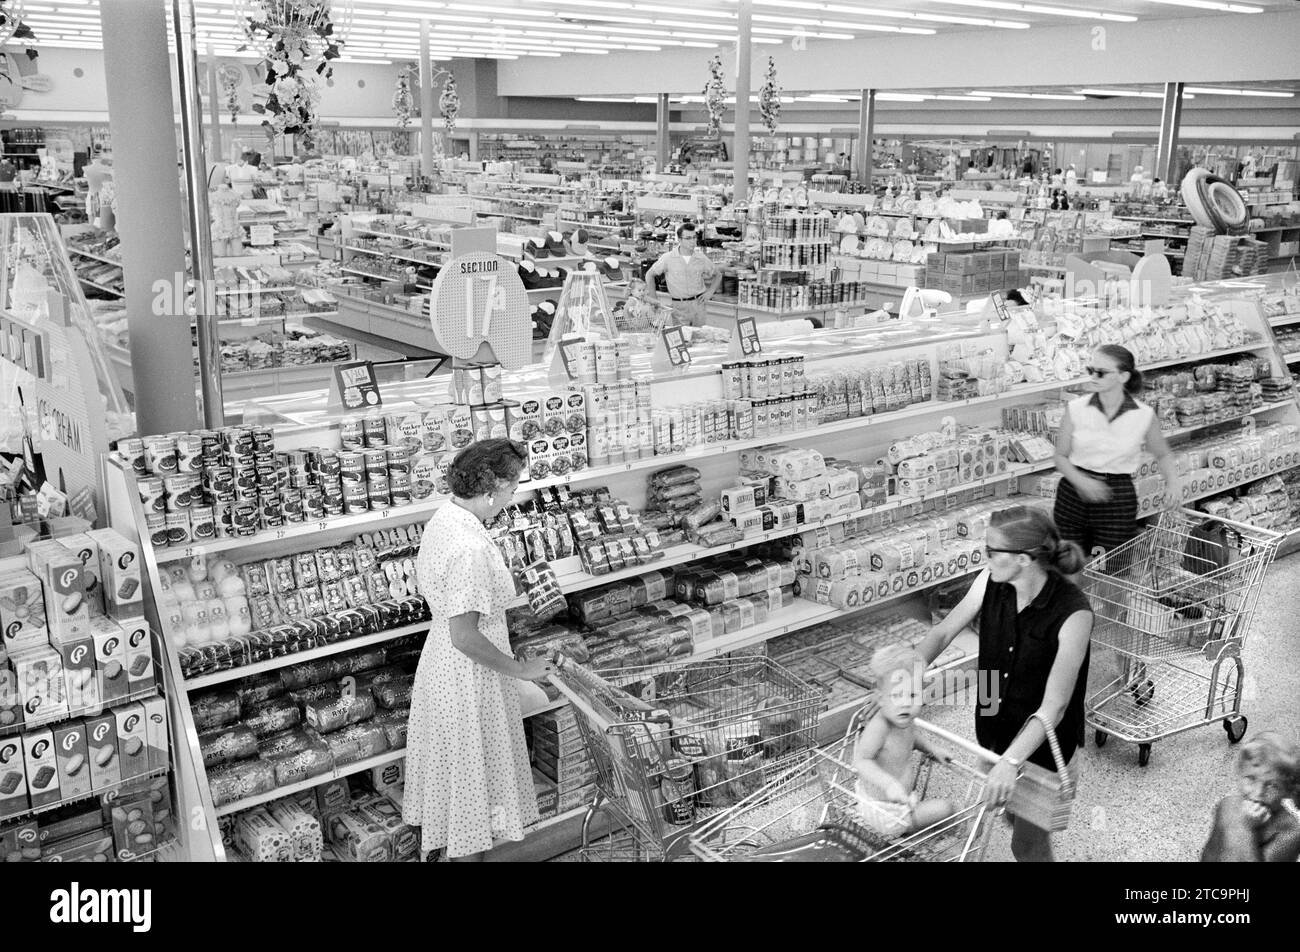 Femmes avec des chariots dans un supermarché, Washington, D.C., USA, Thomas J. O'Halloran, U.S. News & World Report Magazine Photography Collection, juin 1958 Banque D'Images